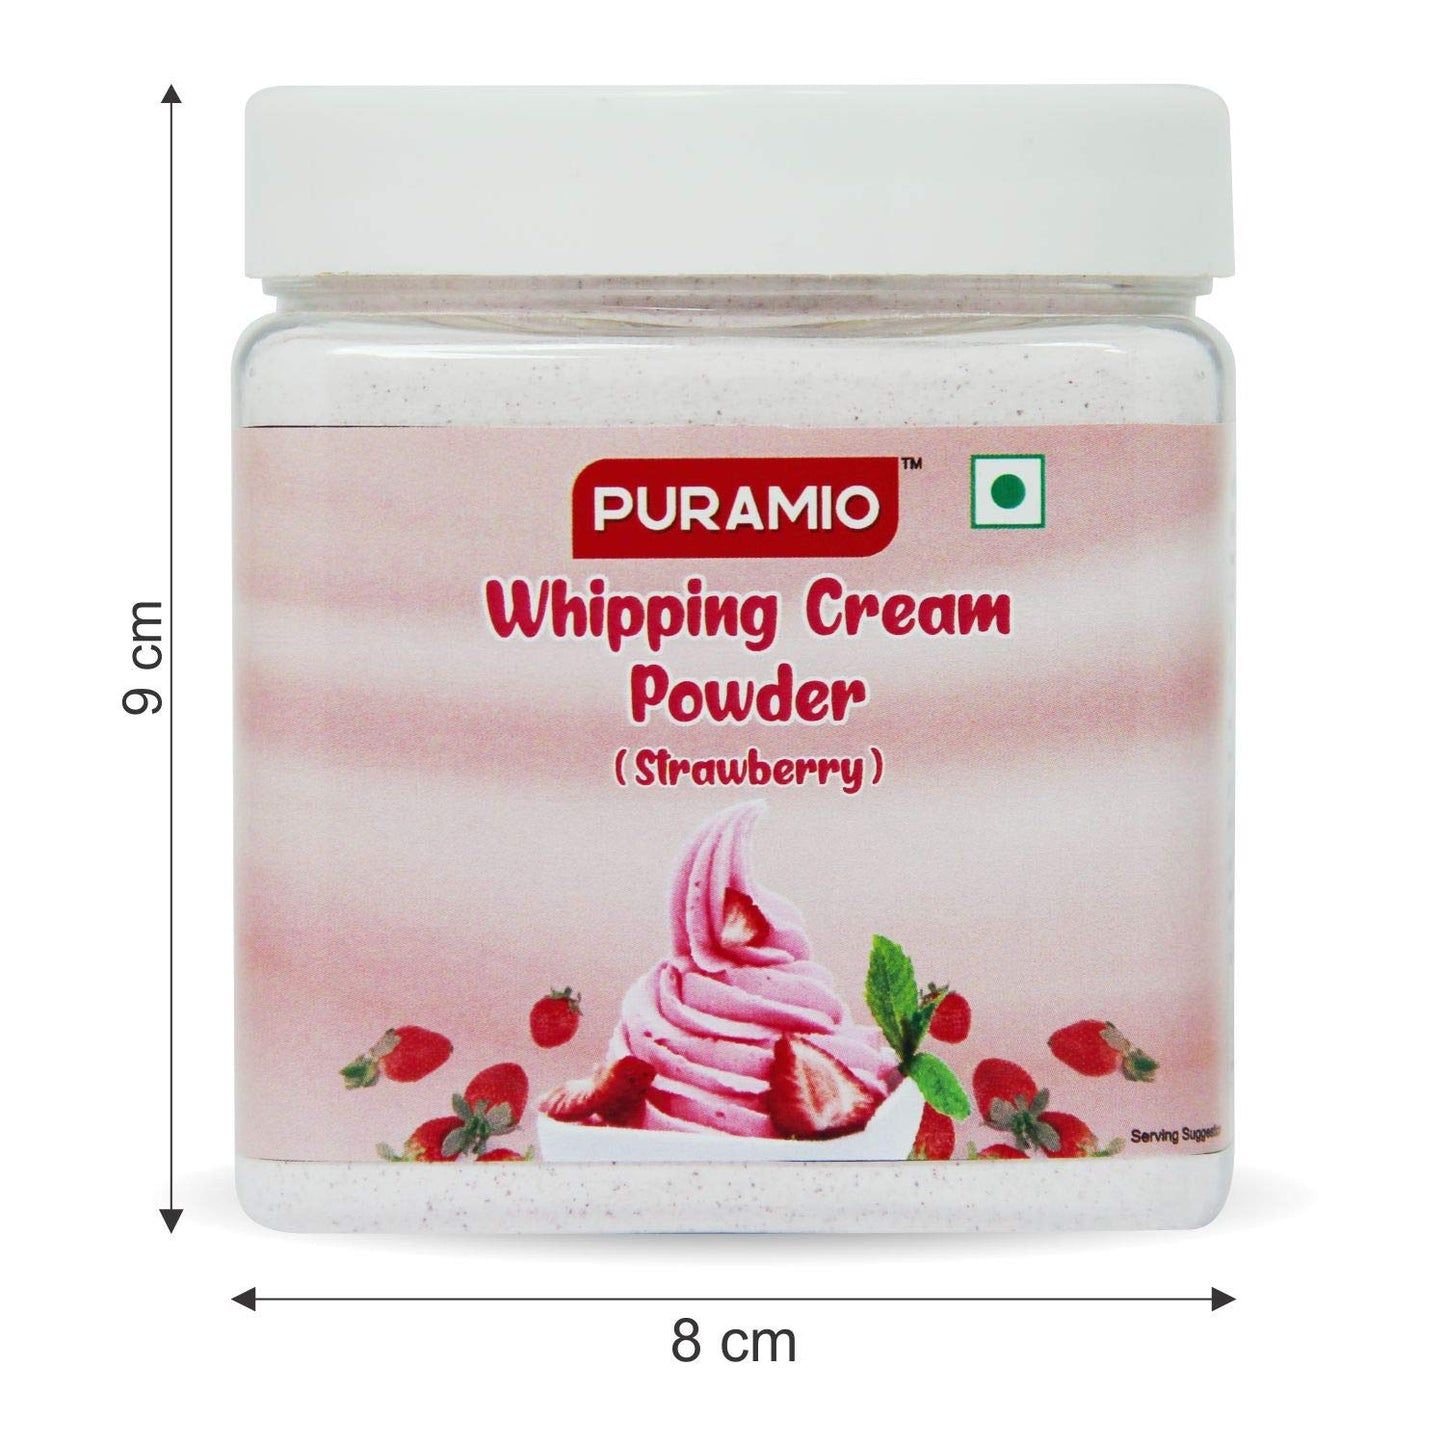 Puramio Whipping Cream Powder (Strawberry)